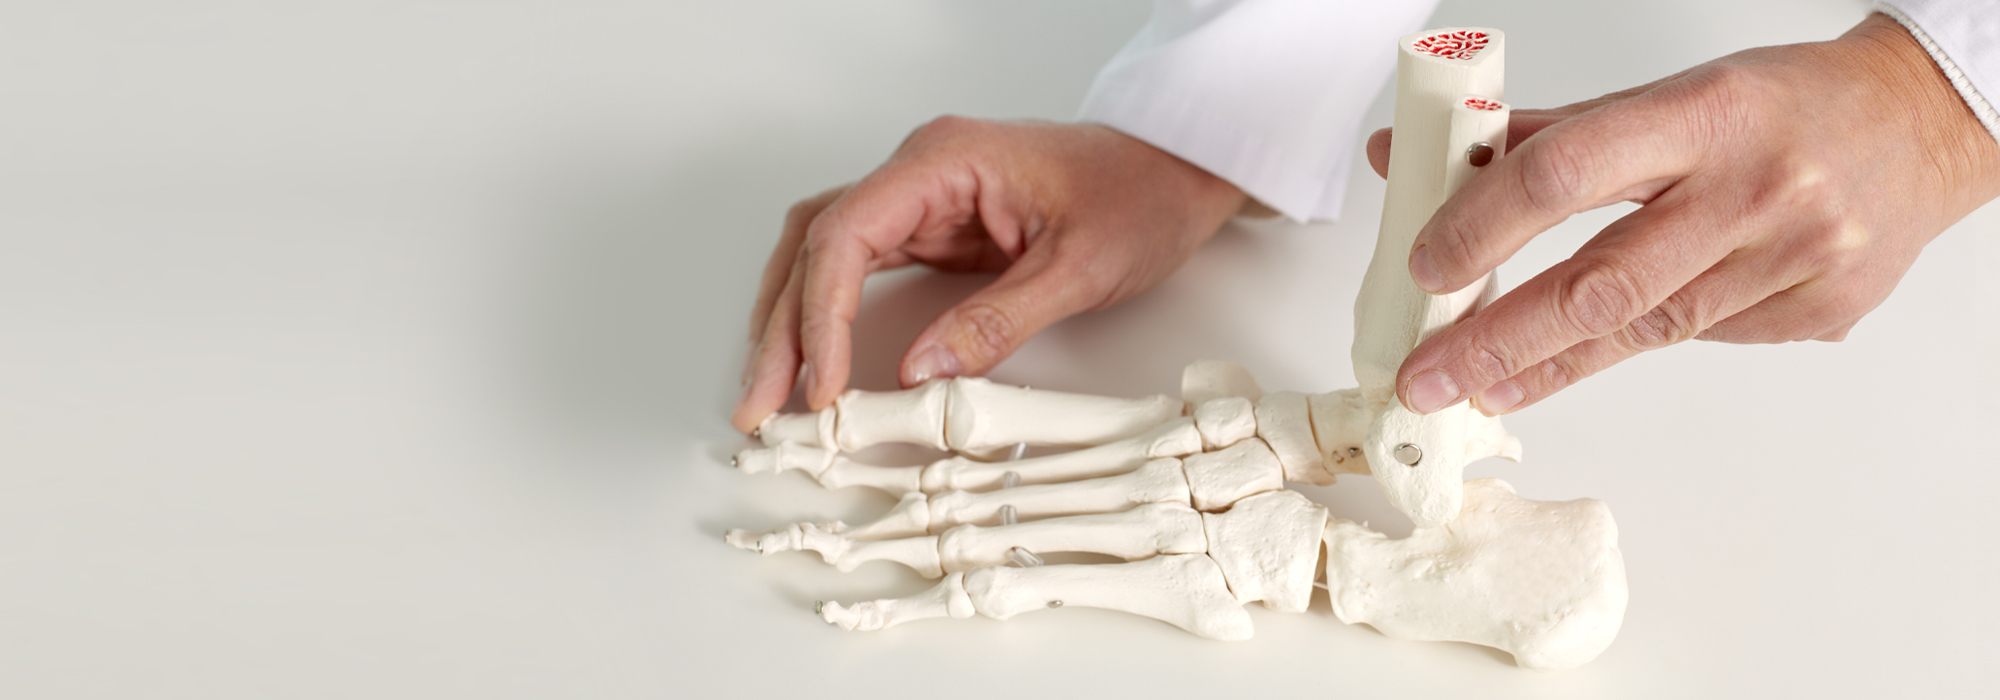 Hände halten ein künstliches Skelett eines Fußes